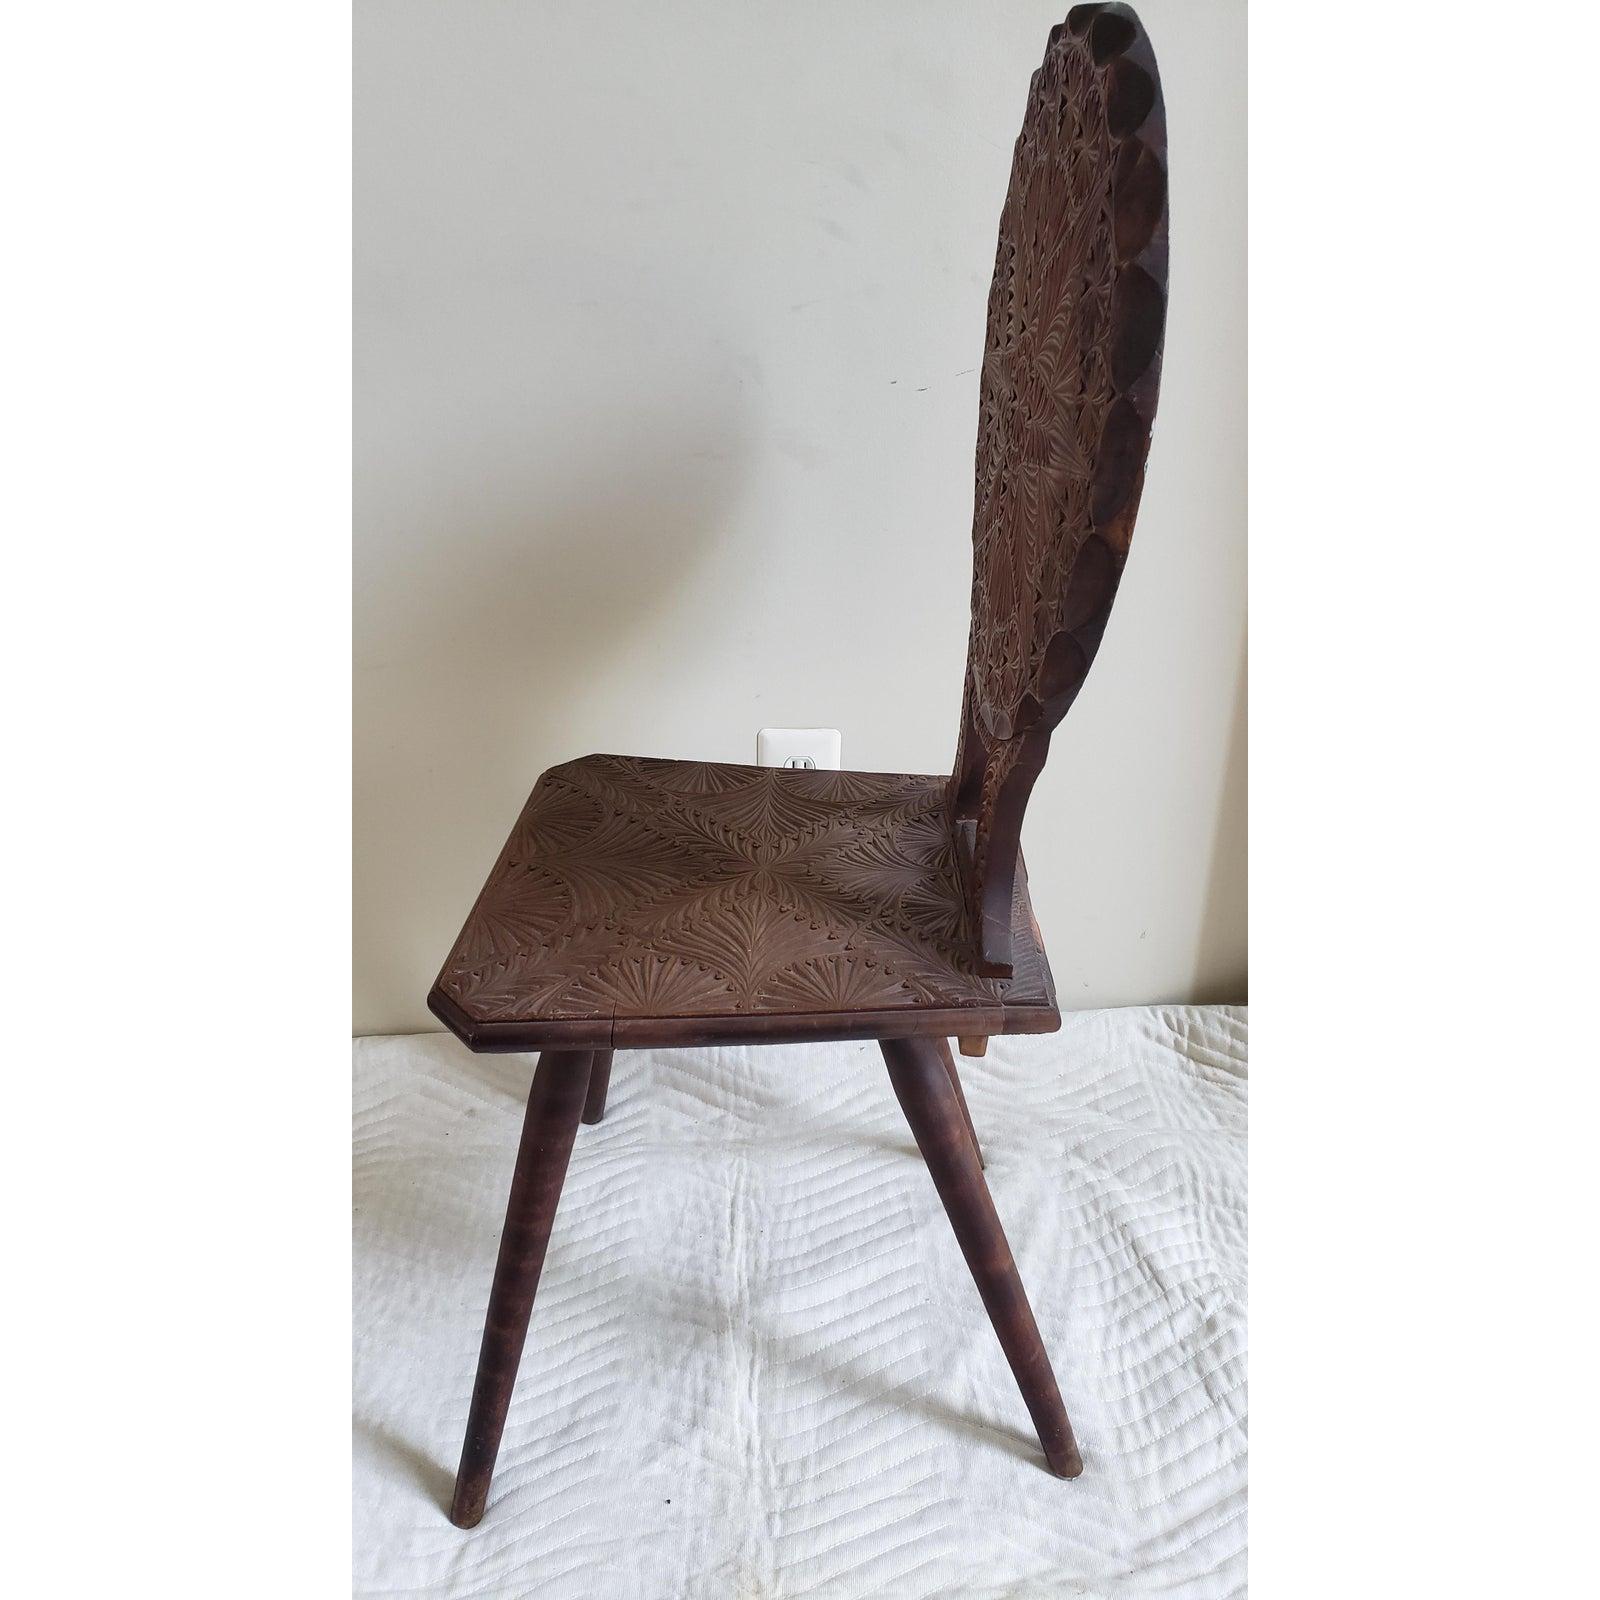 Chaise ancienne sculptée à la main en excellent état vintage.
La chaise mesure 18 L x 18 P x 41 H.
Sculptures très fines. Bois massif.